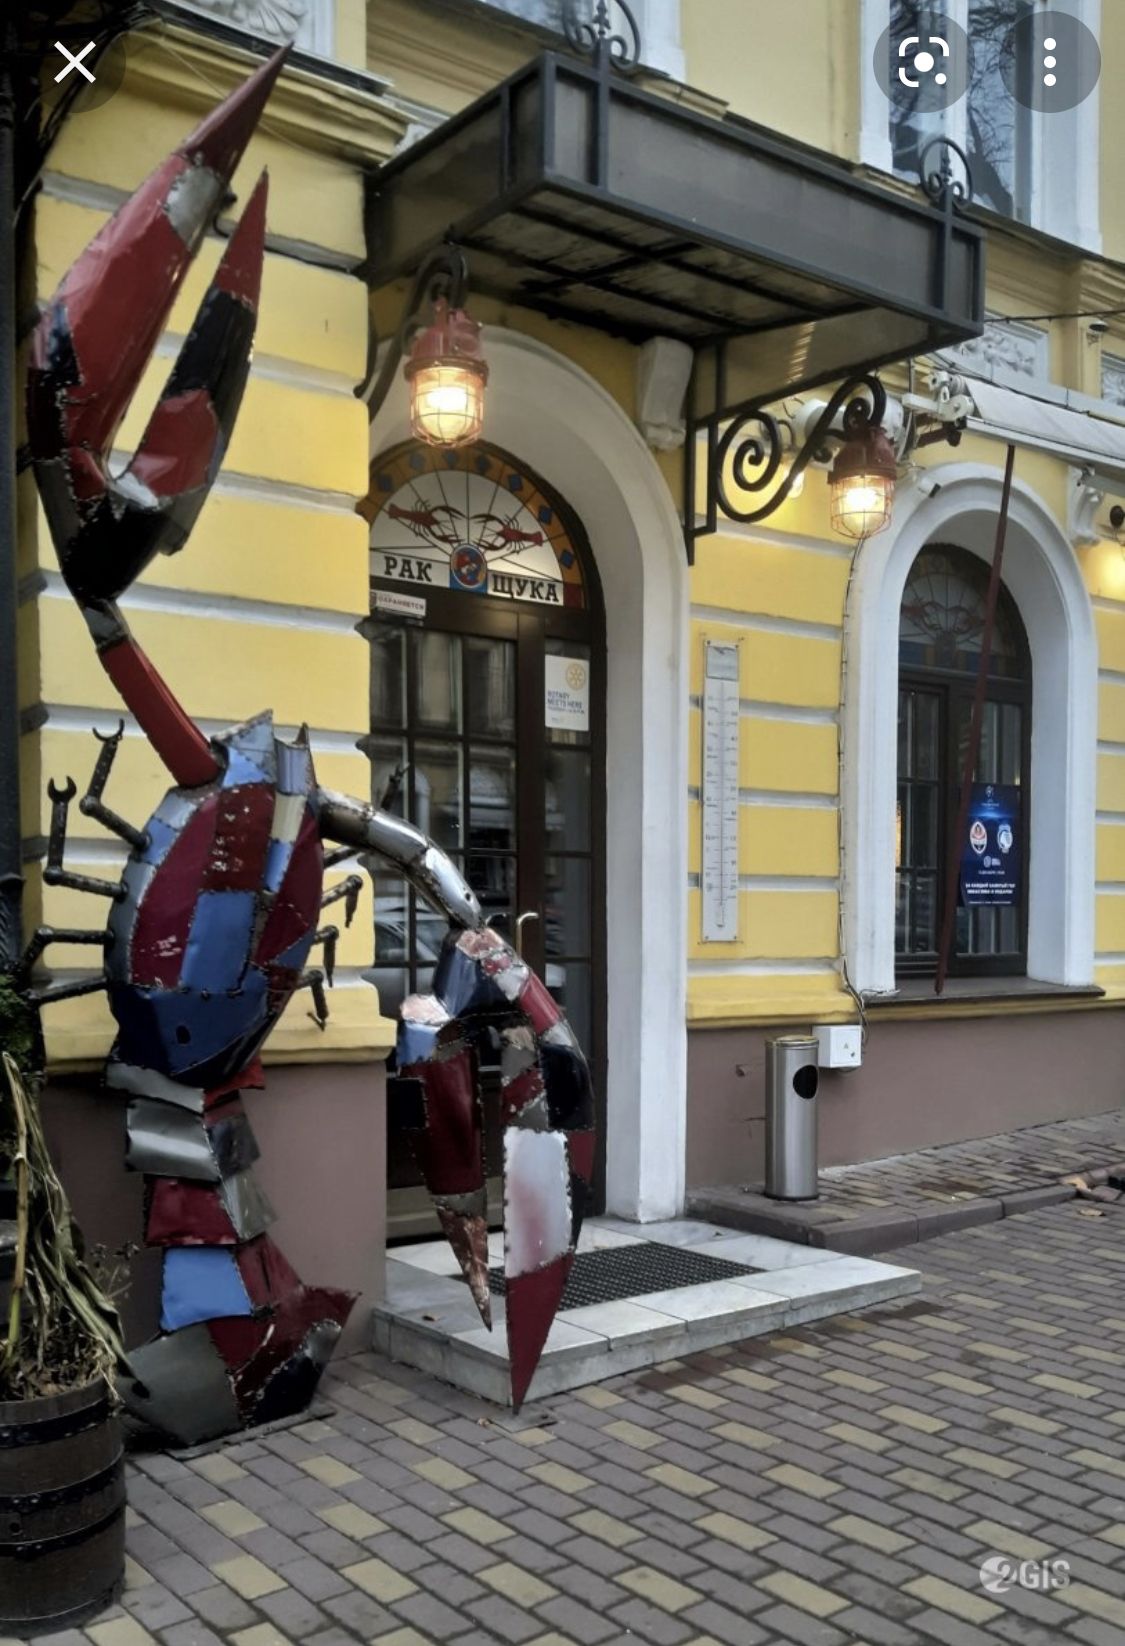 В продаже помещение ресторана на ул.Жуковского